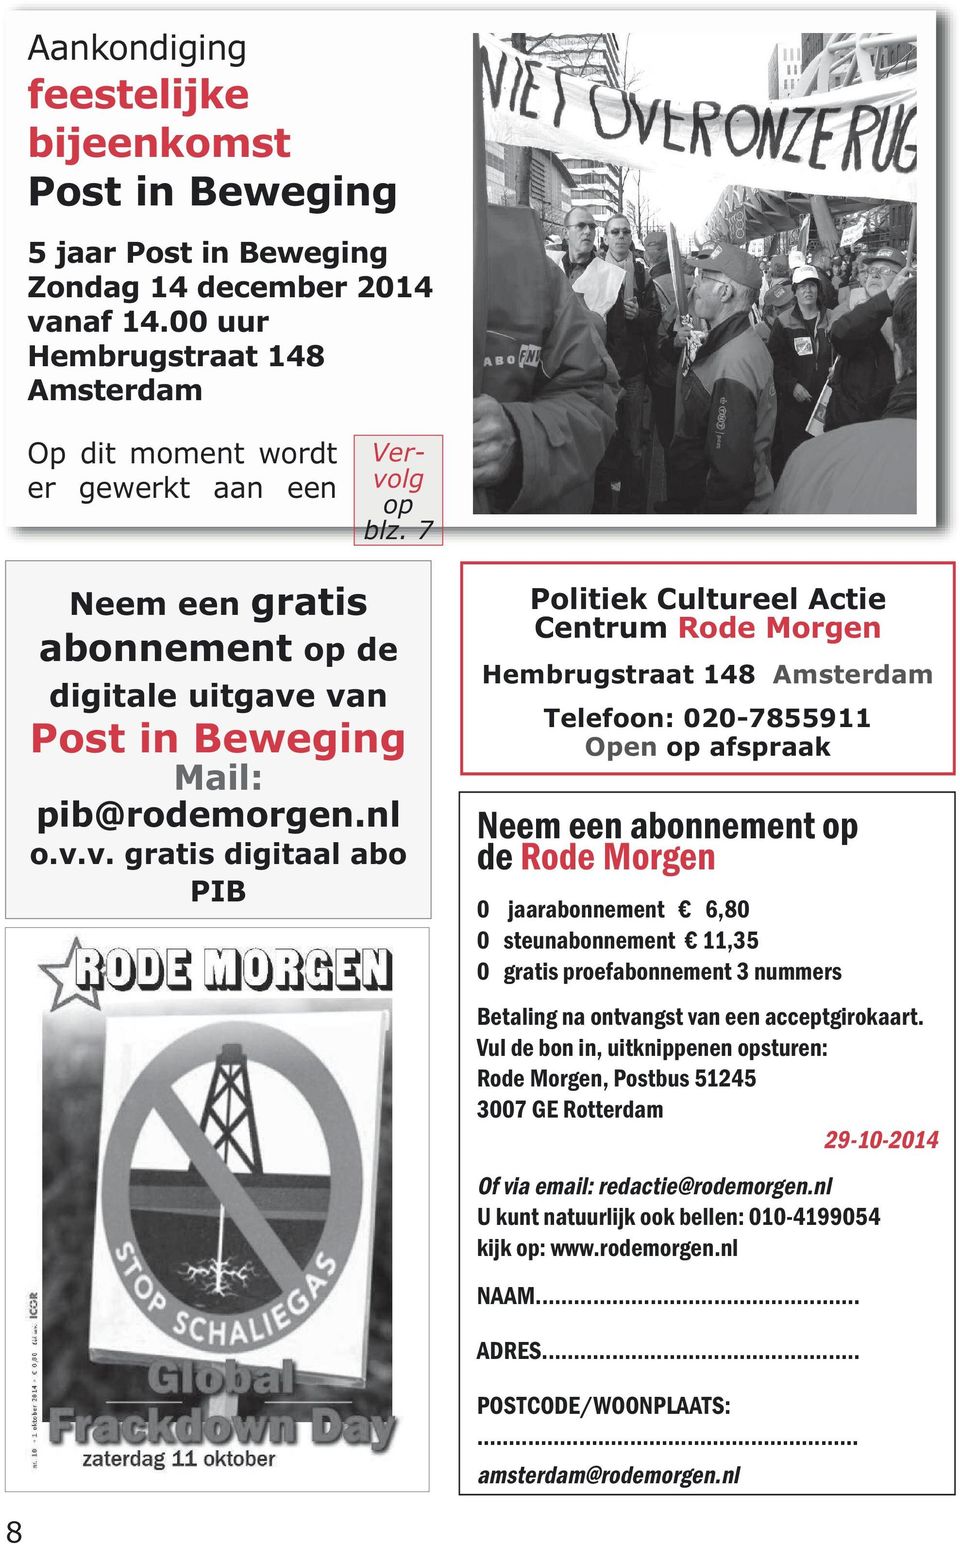 van Post in Beweging Mail: pib@rodemorgen.nl o.v.v. gratis digitaal abo PIB Politiek Cultureel Actie Centrum Rode Morgen Hembrugstraat 148 Amsterdam Telefoon: 020-7855911 Open op afspraak Neem een